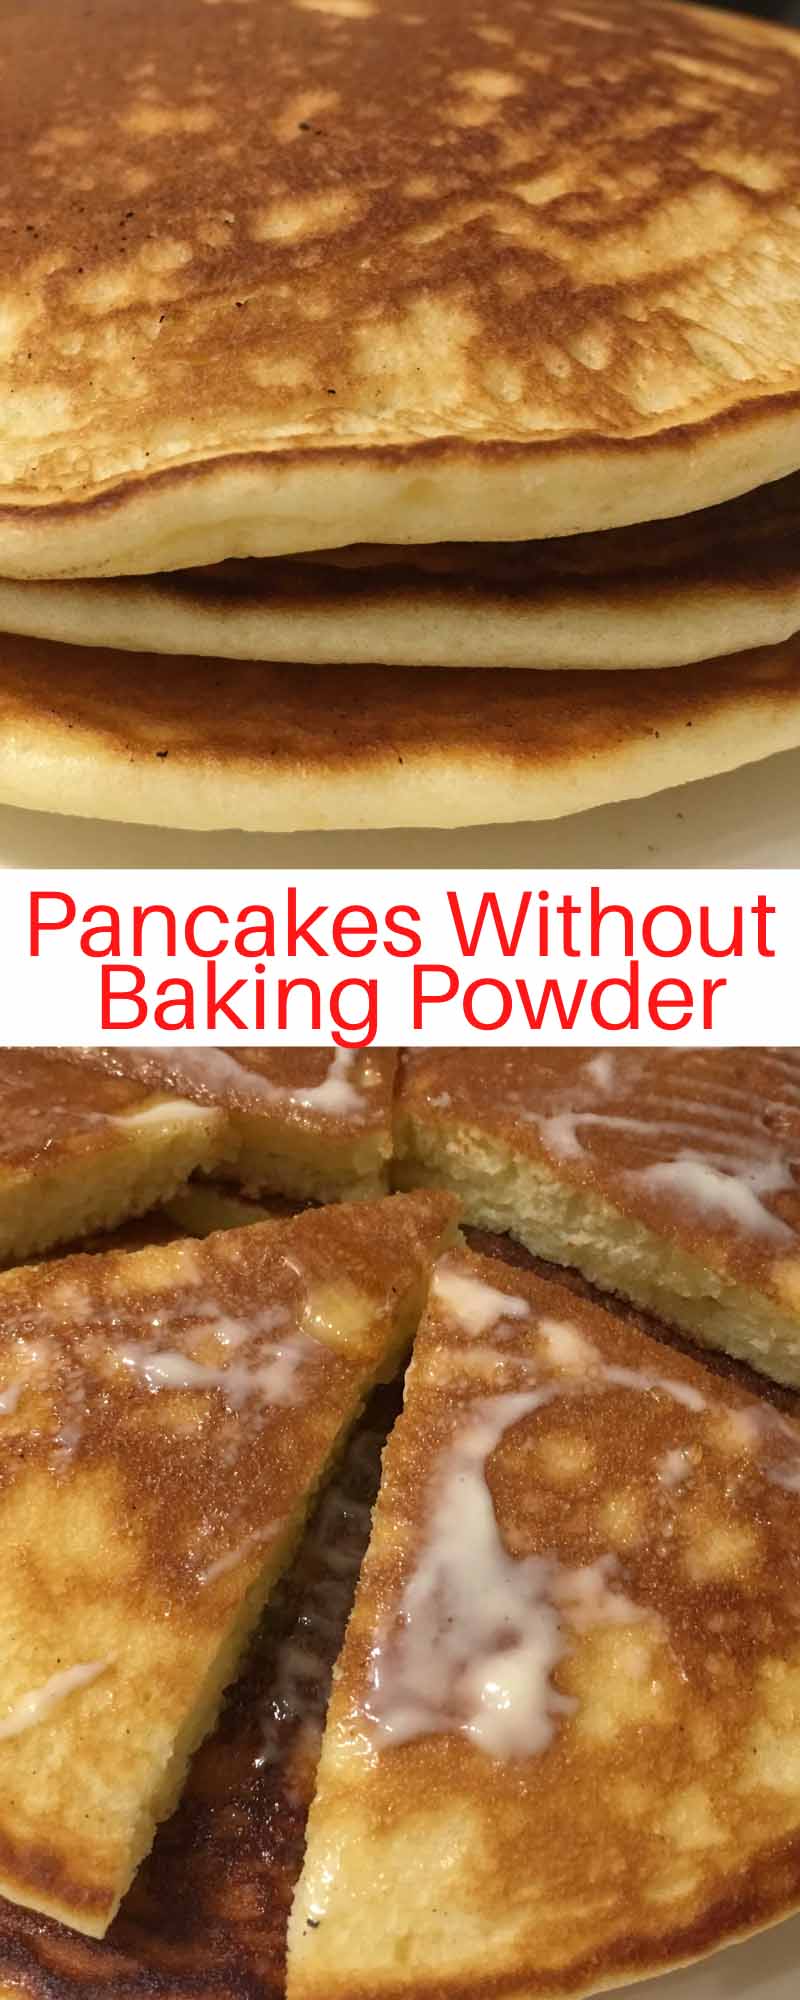 pancakes without baking powder